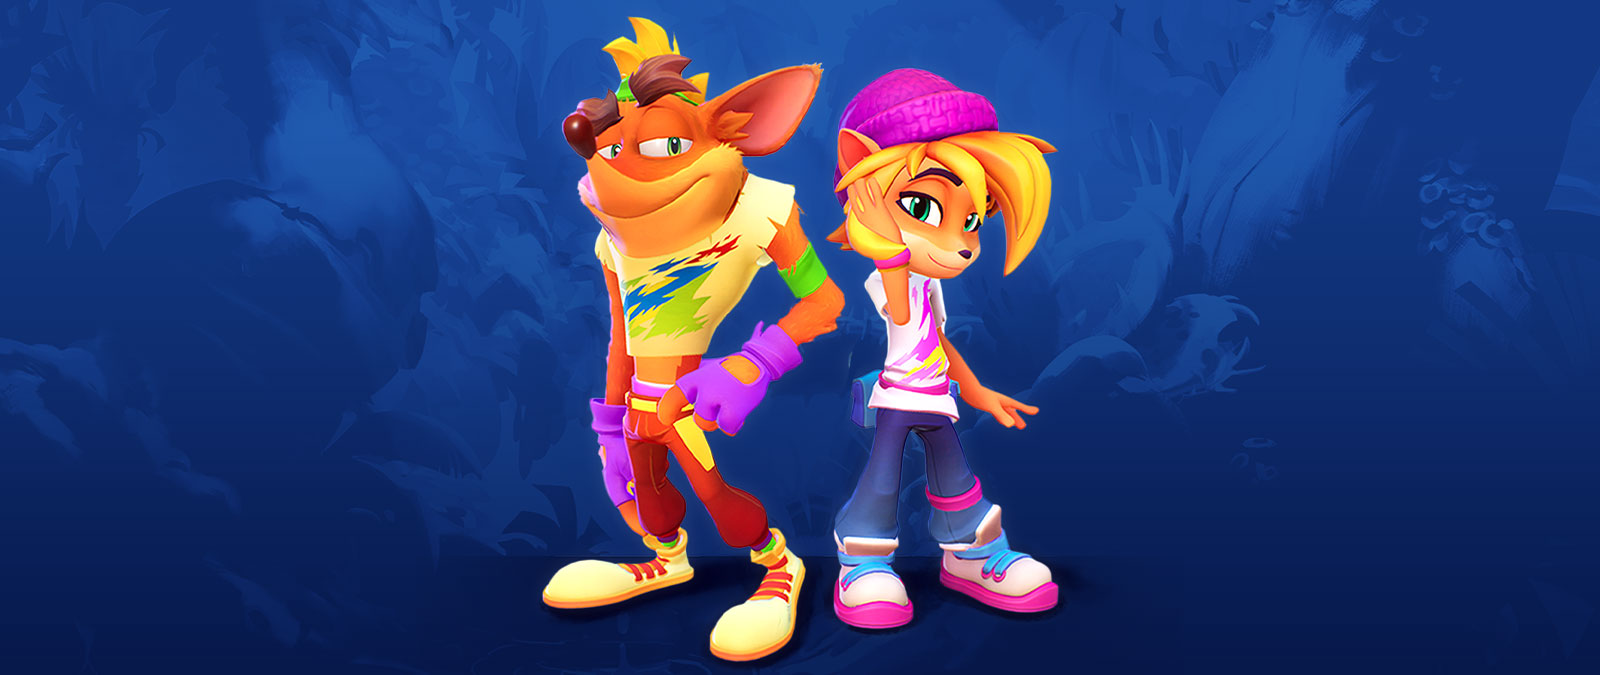 Crash ja Coco seisovat neonvaatteissa. 